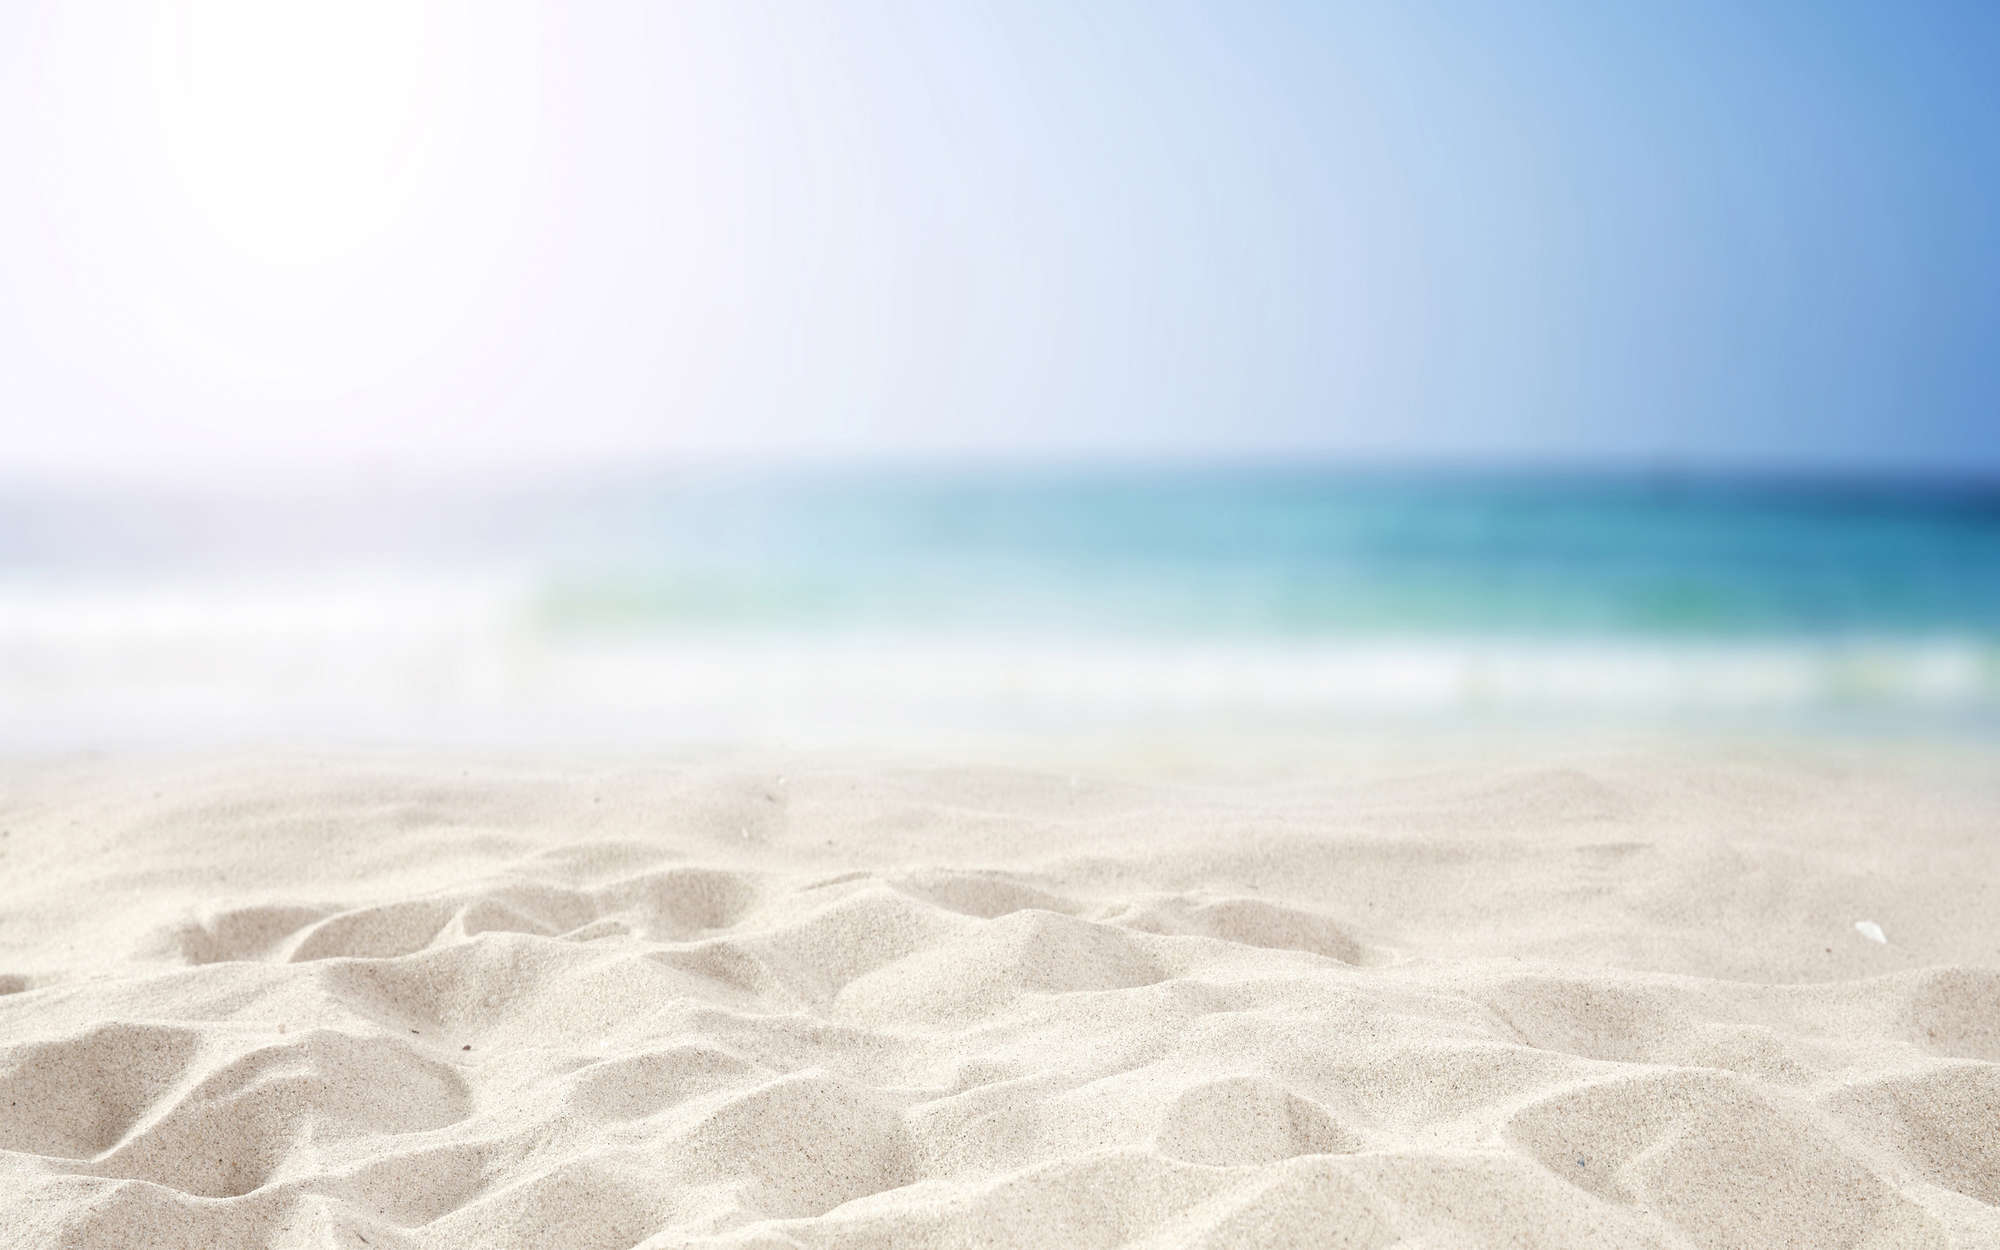             Fototapete Strand mit Sand in Weiß – Mattes Glattvlies
        